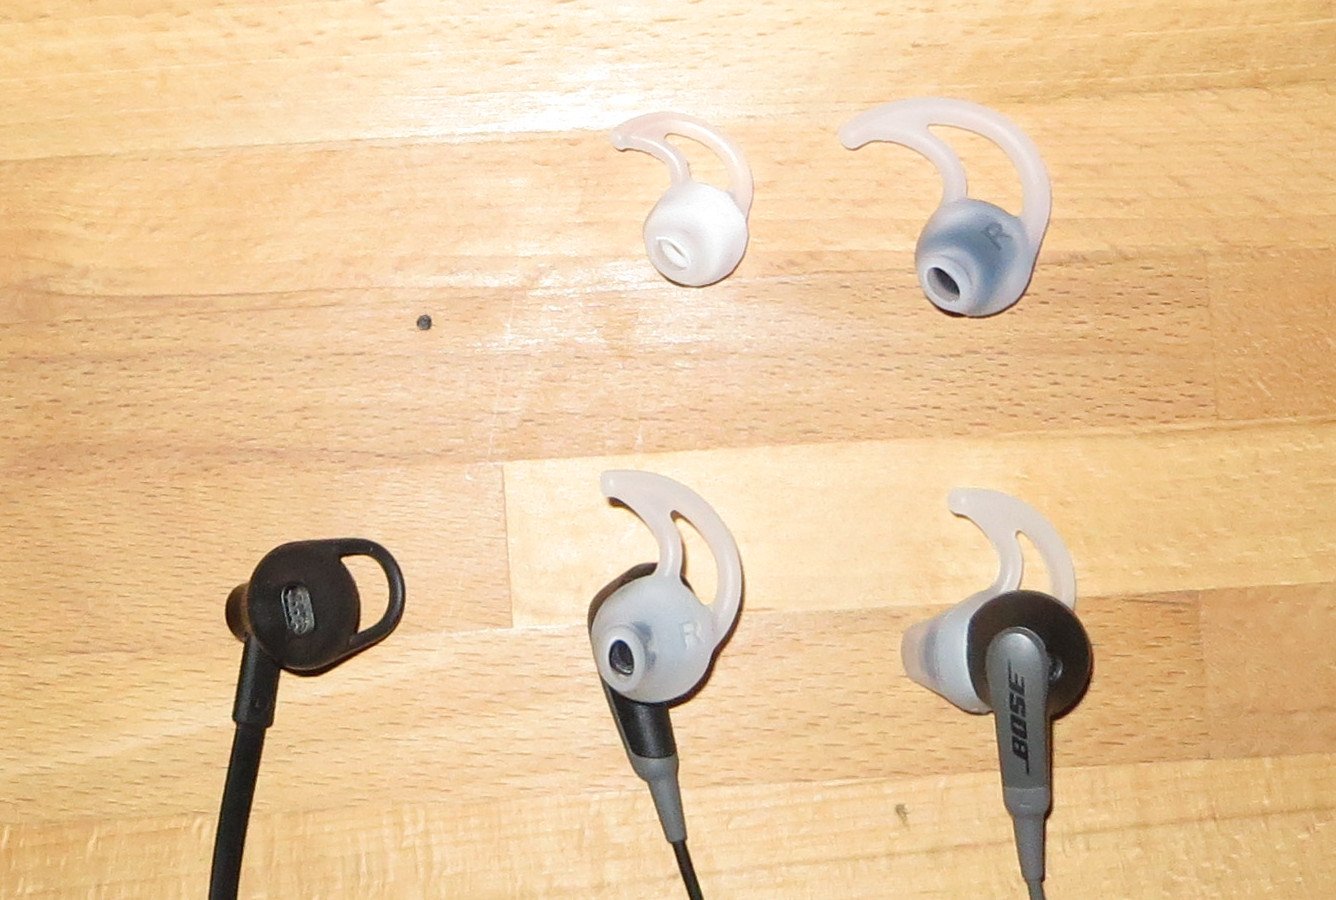 Die Earbuds des Bose SoundSport werden in drei Größen geliefert und passen sich dem Ohr besser an als der billige Kopfhörer links (Bild: Peter Giesecke)